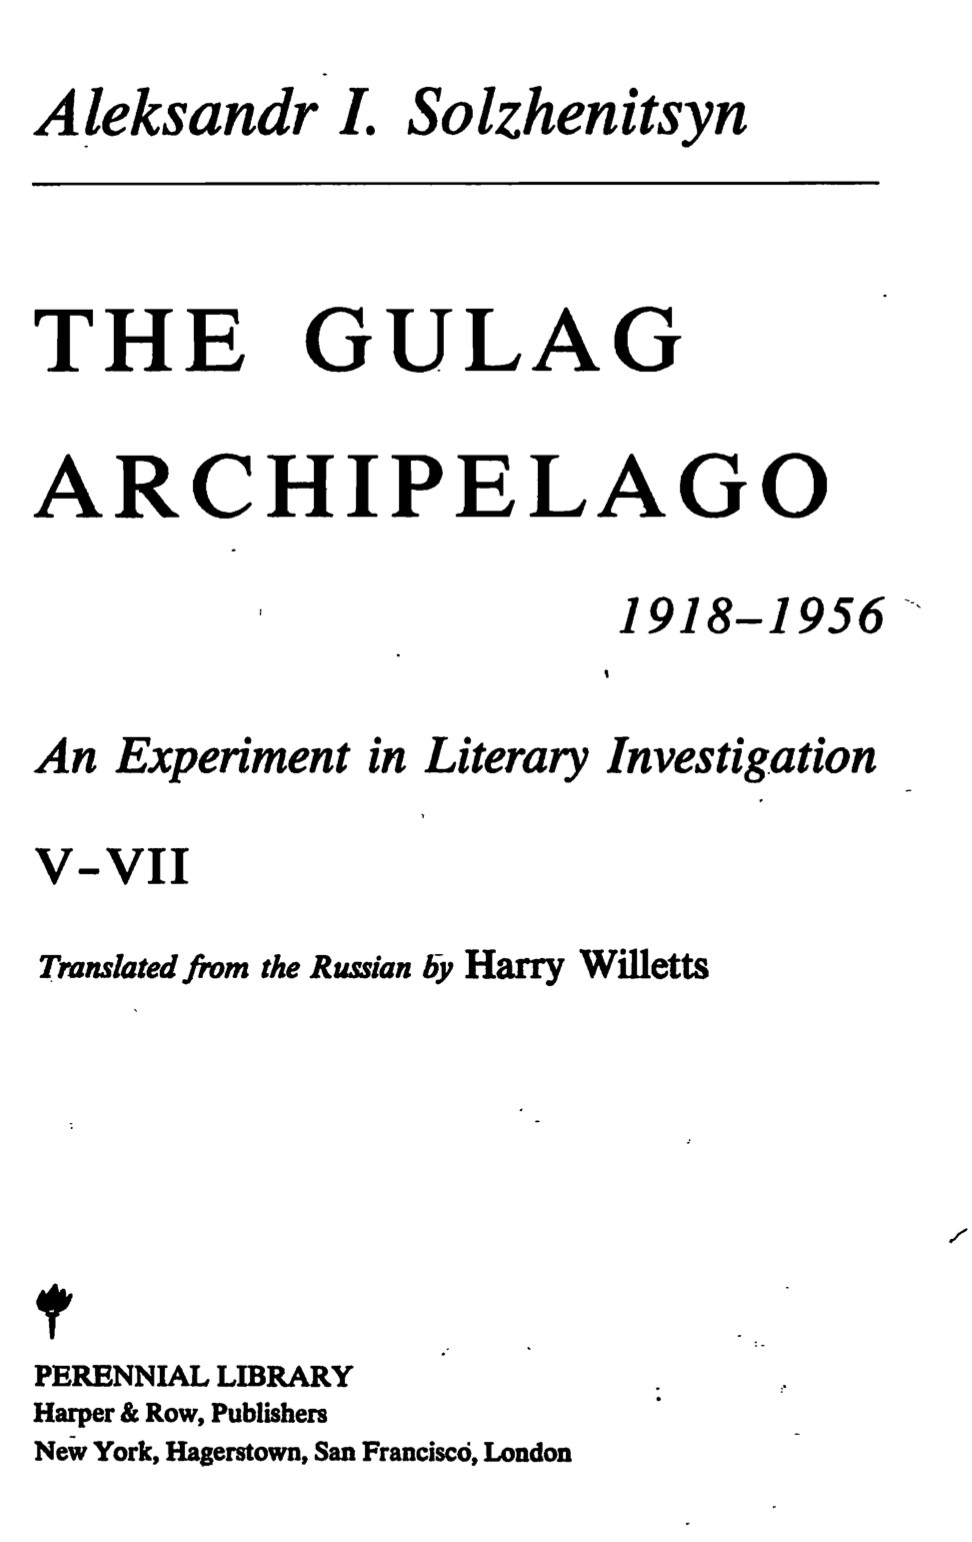 The Gulag Archipelago - 1918-1956 - Volume V-VII (1973) by Aleksandr I. Solzhenitsyn